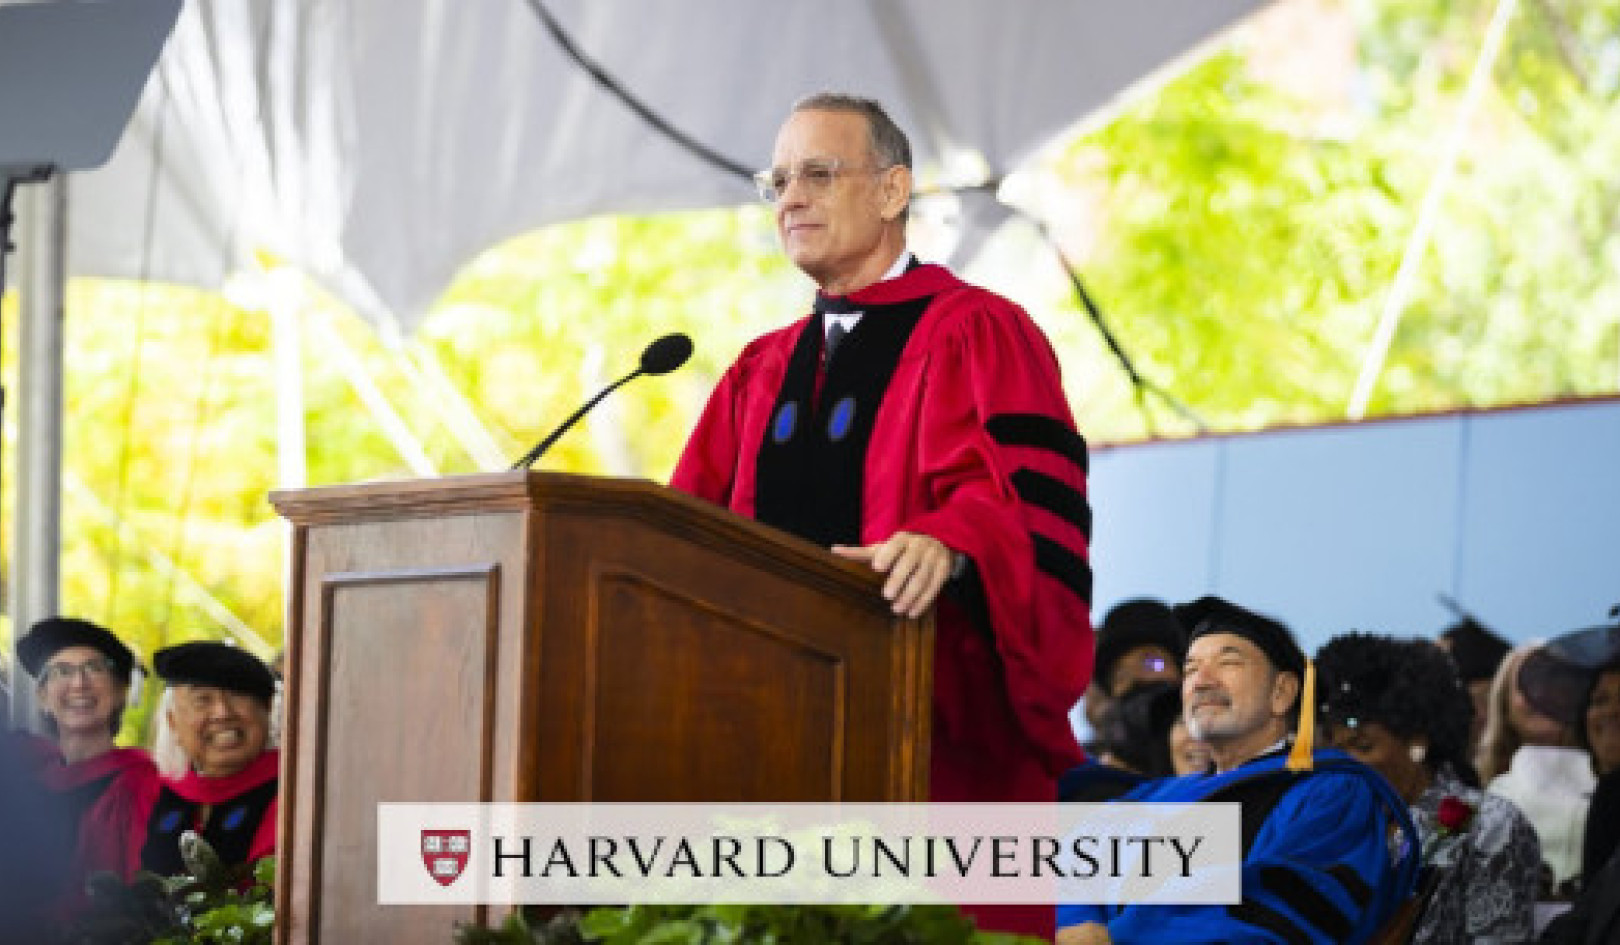 Tom Hanks inspiroi Harvardin valmistuneita omaksumaan totuuden, oikeuden ja amerikkalaisen tavan